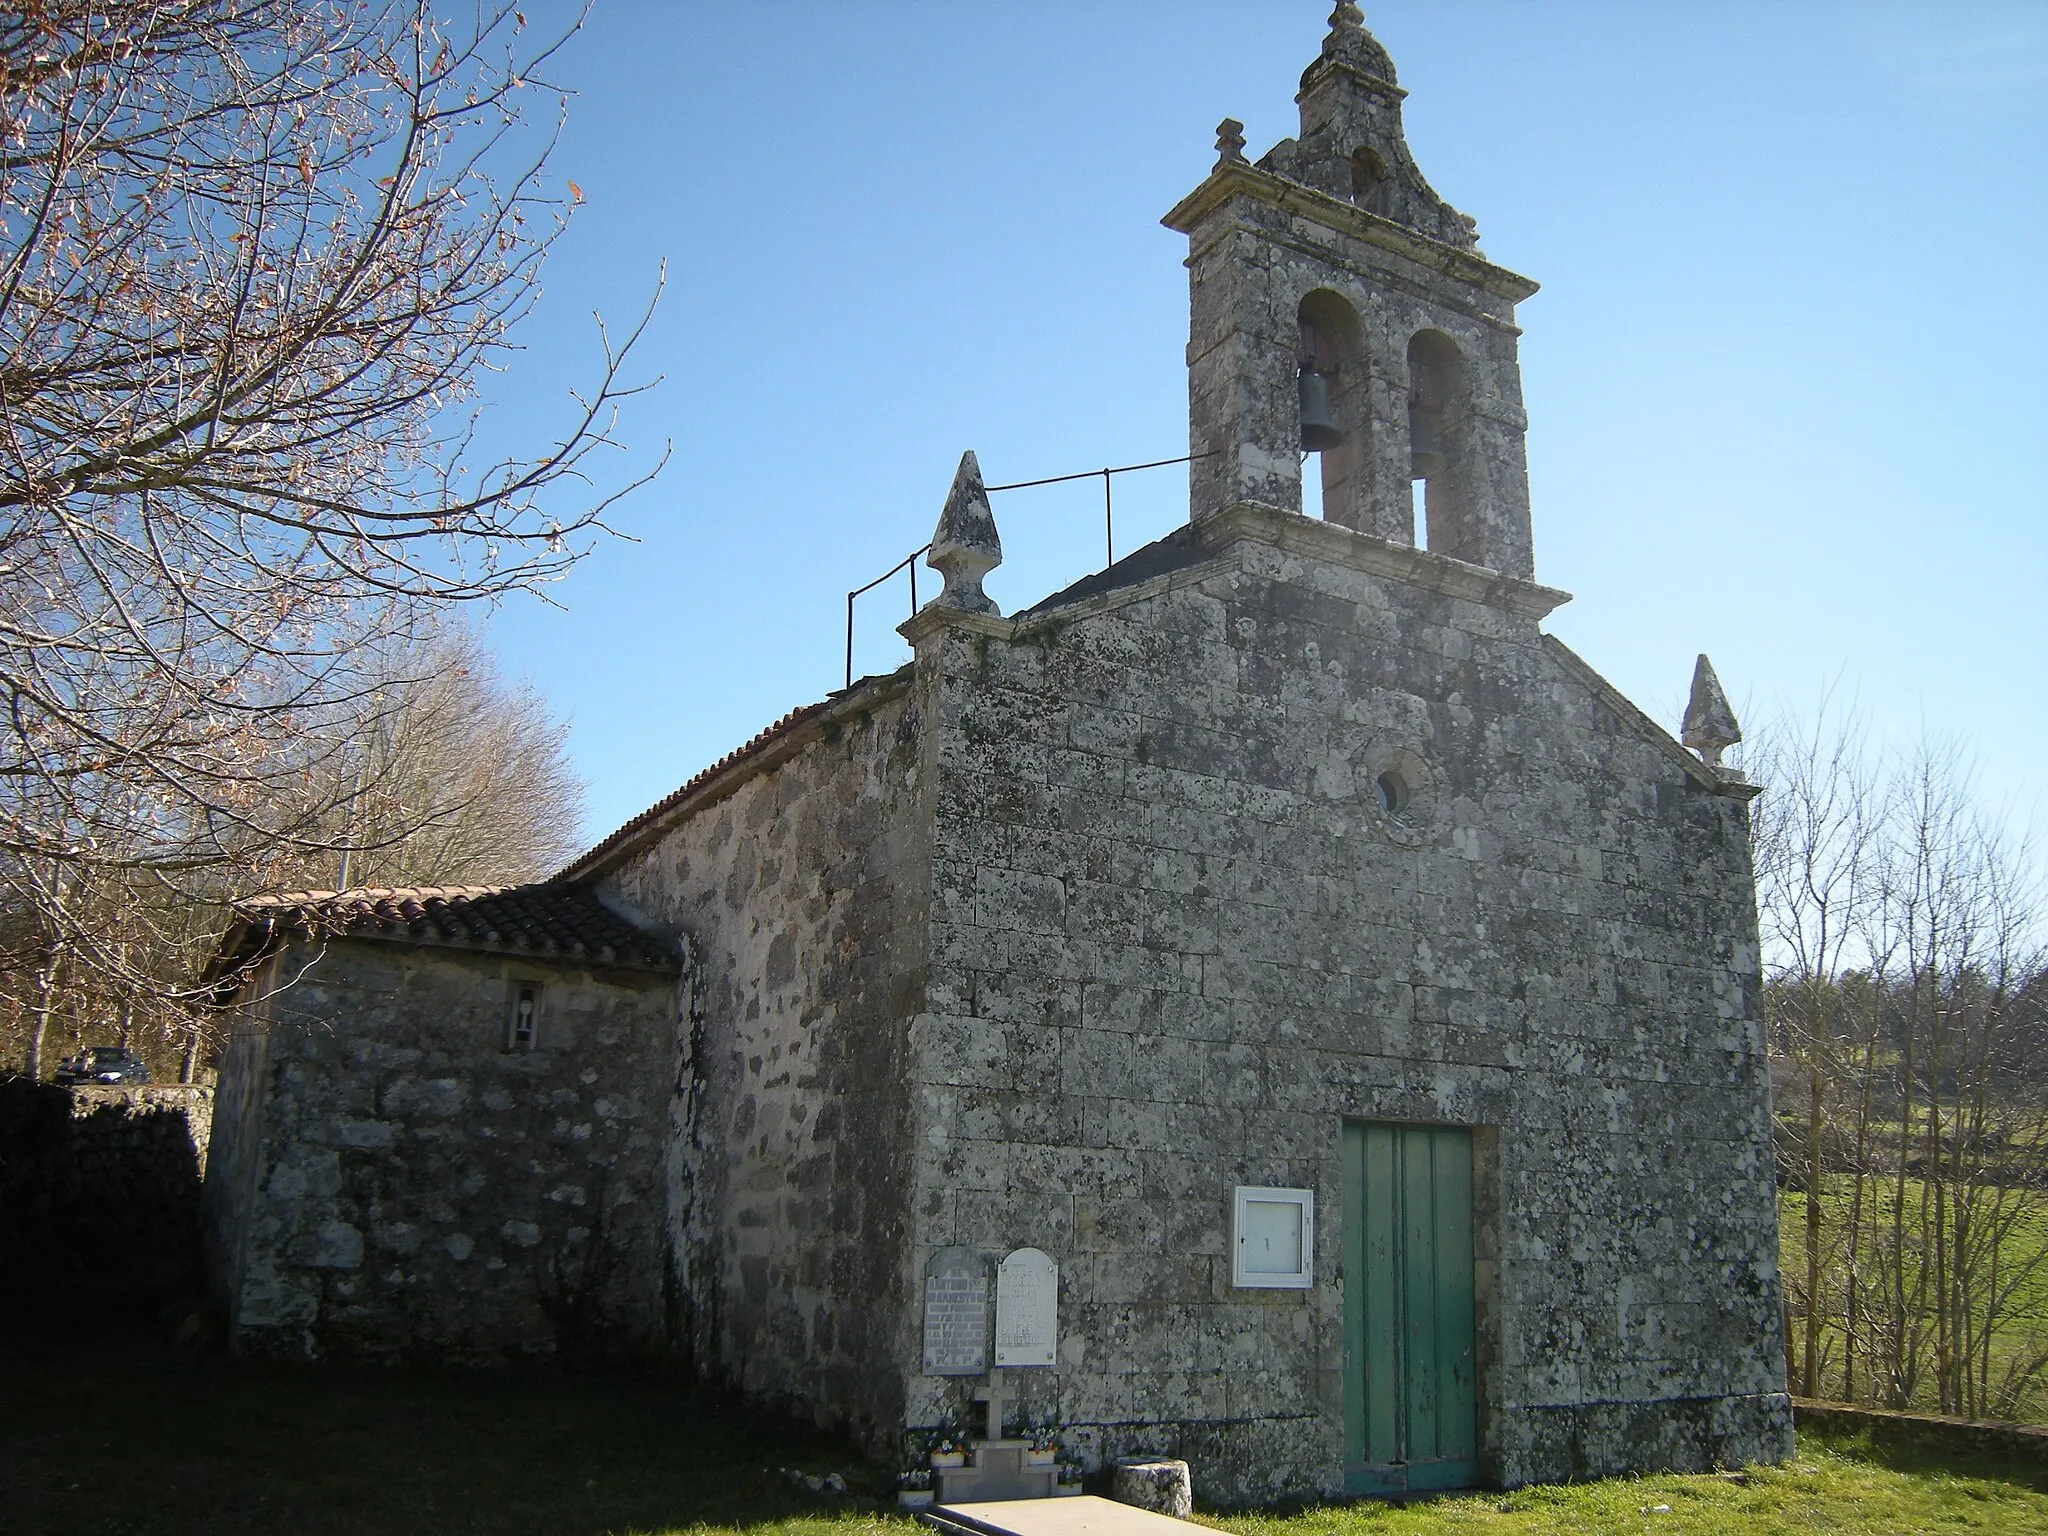 Photo showing: En el concello de O Saviñao, y cercana a la iglesia de San Martiño da Cova, se encuentra esta iglesia construida a principios del siglo XIII y de la que solo conserva su cabecera de esa época.